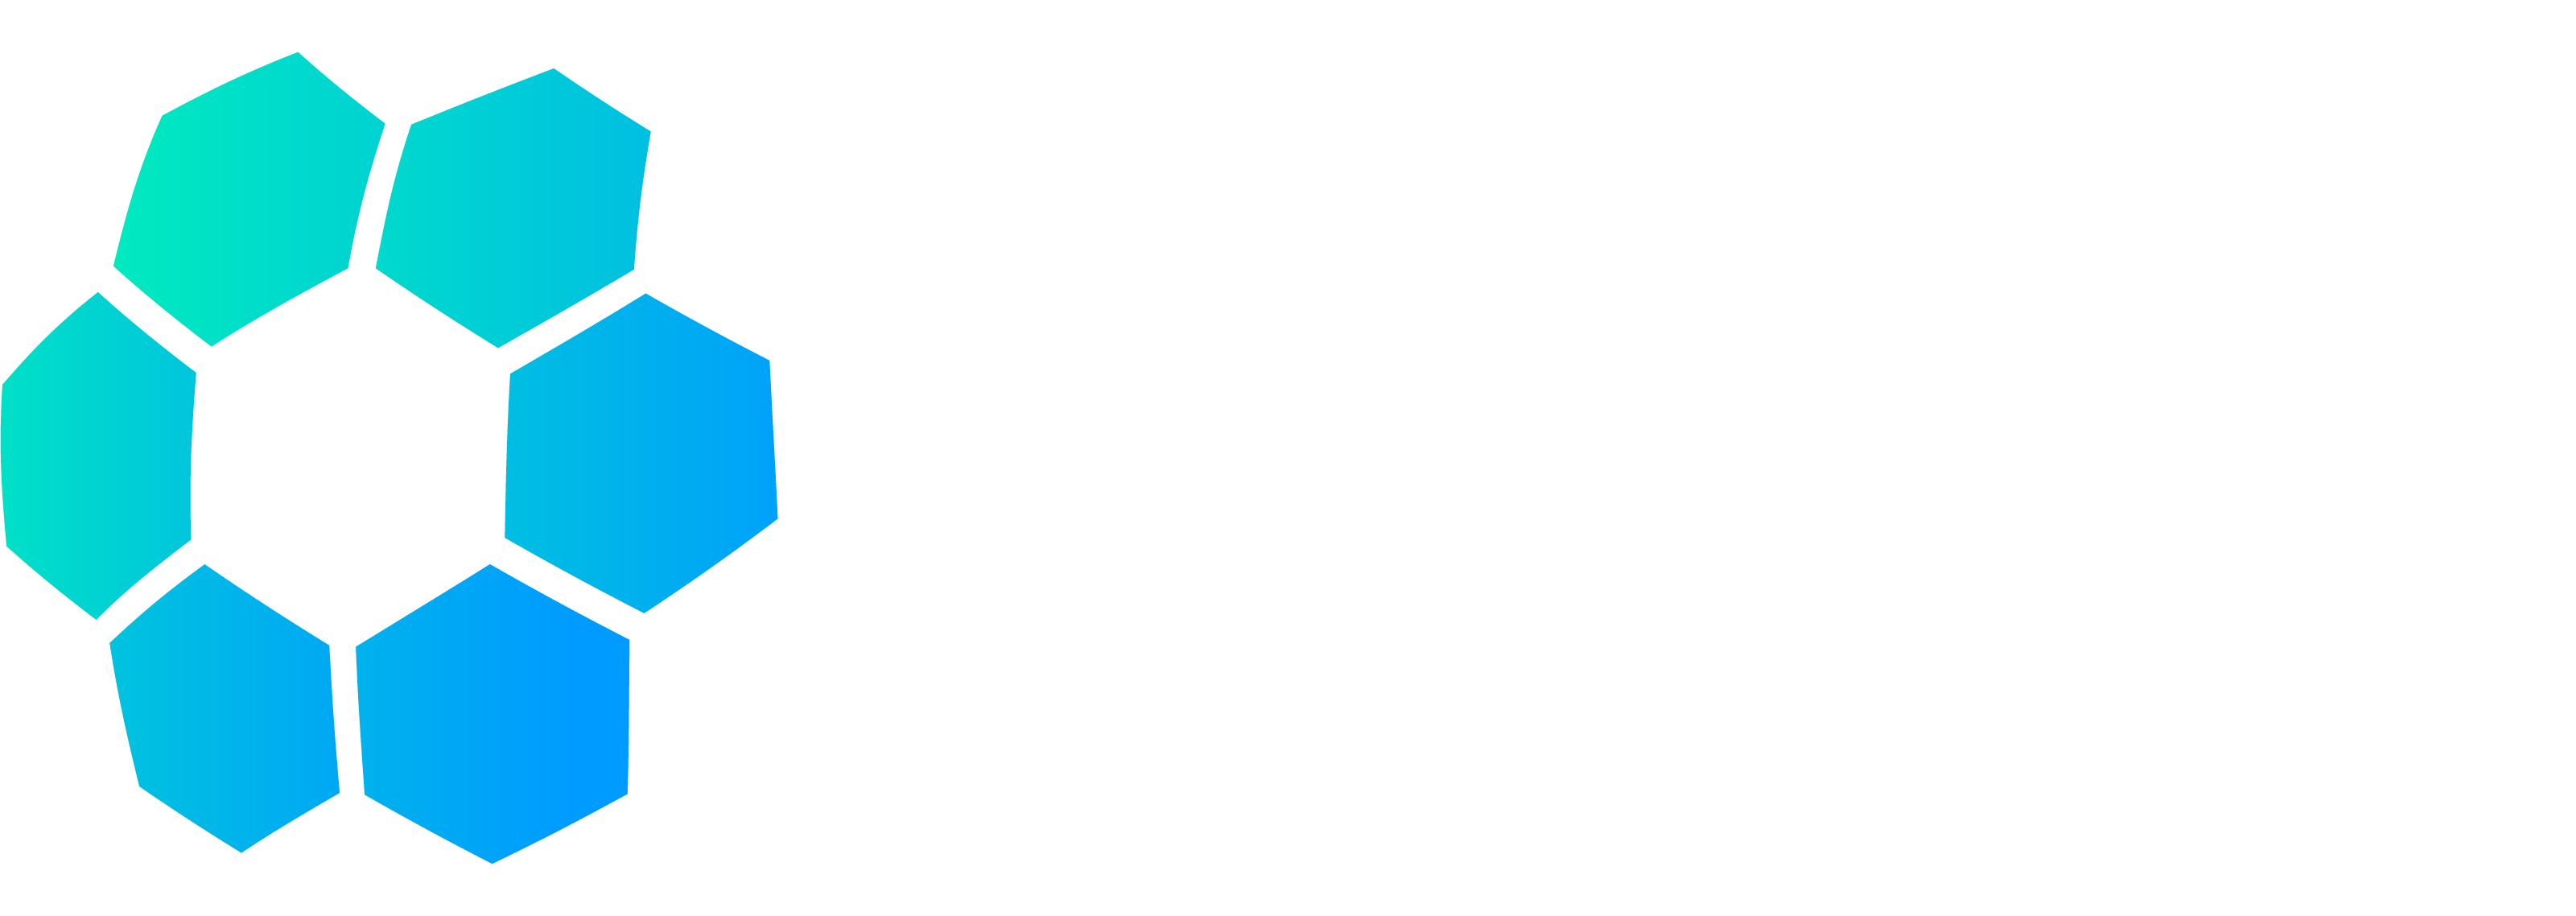 Logotipo FNDB